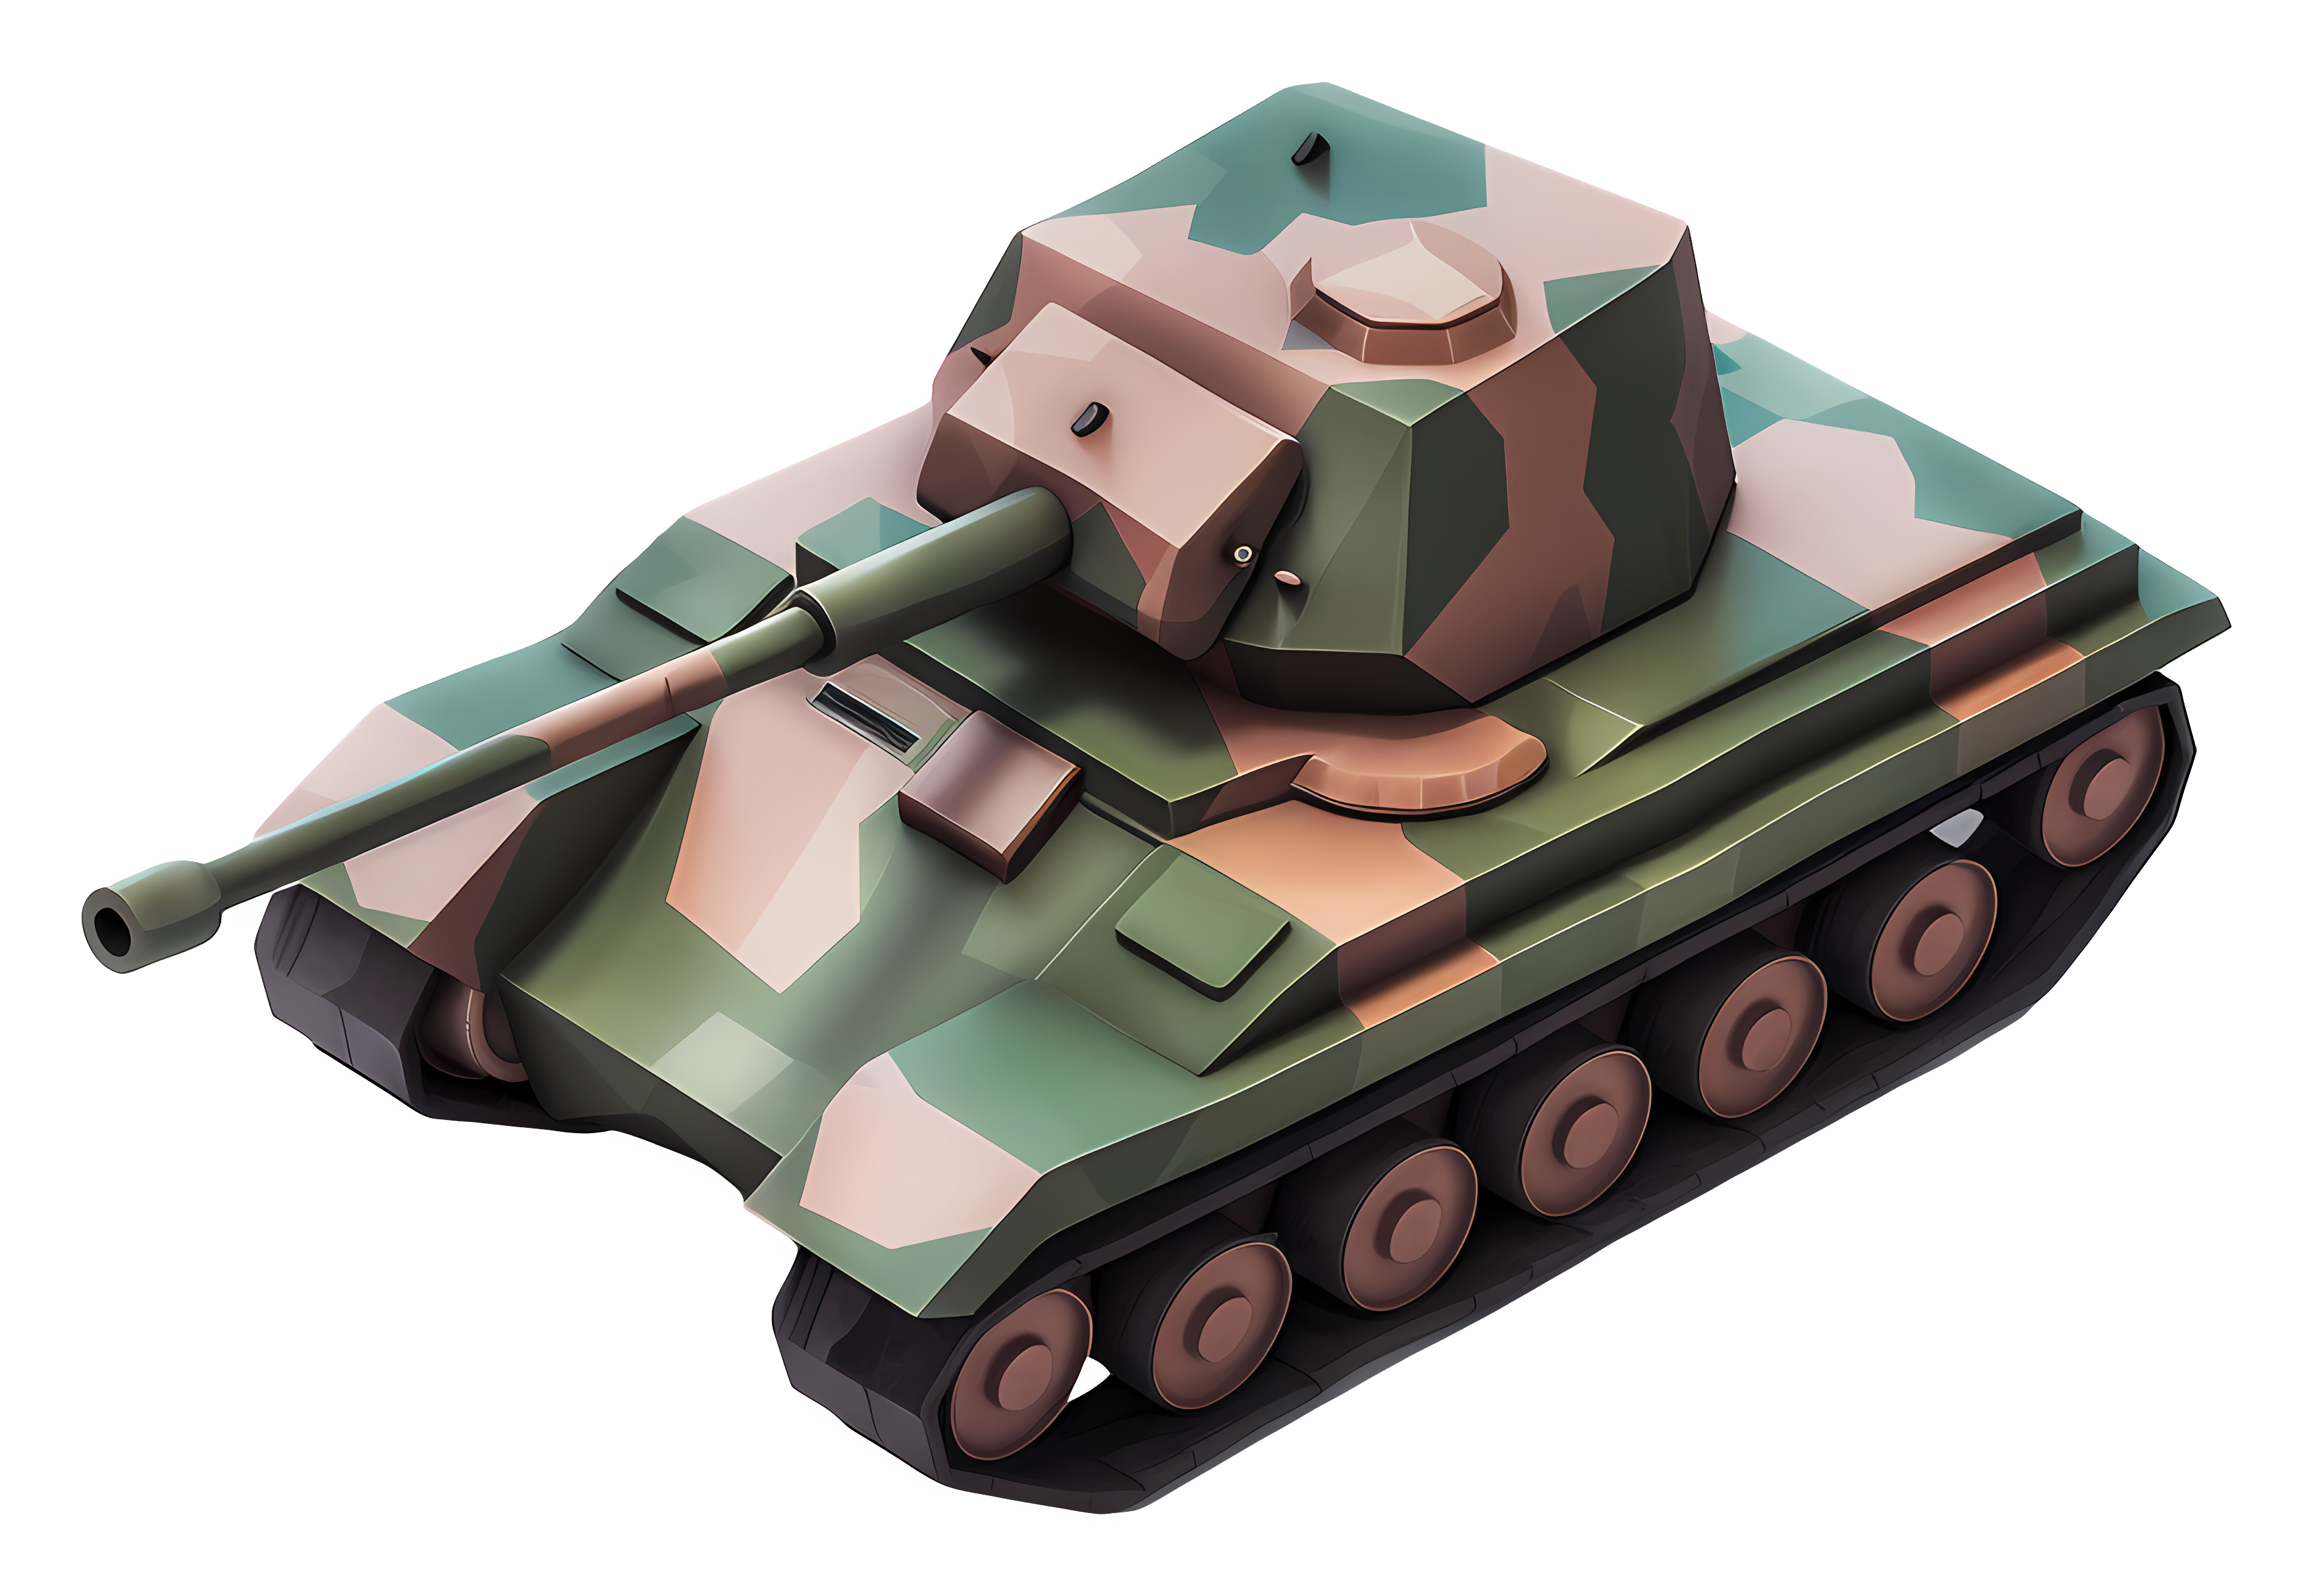 Small green camo tank with gun turret Clipart